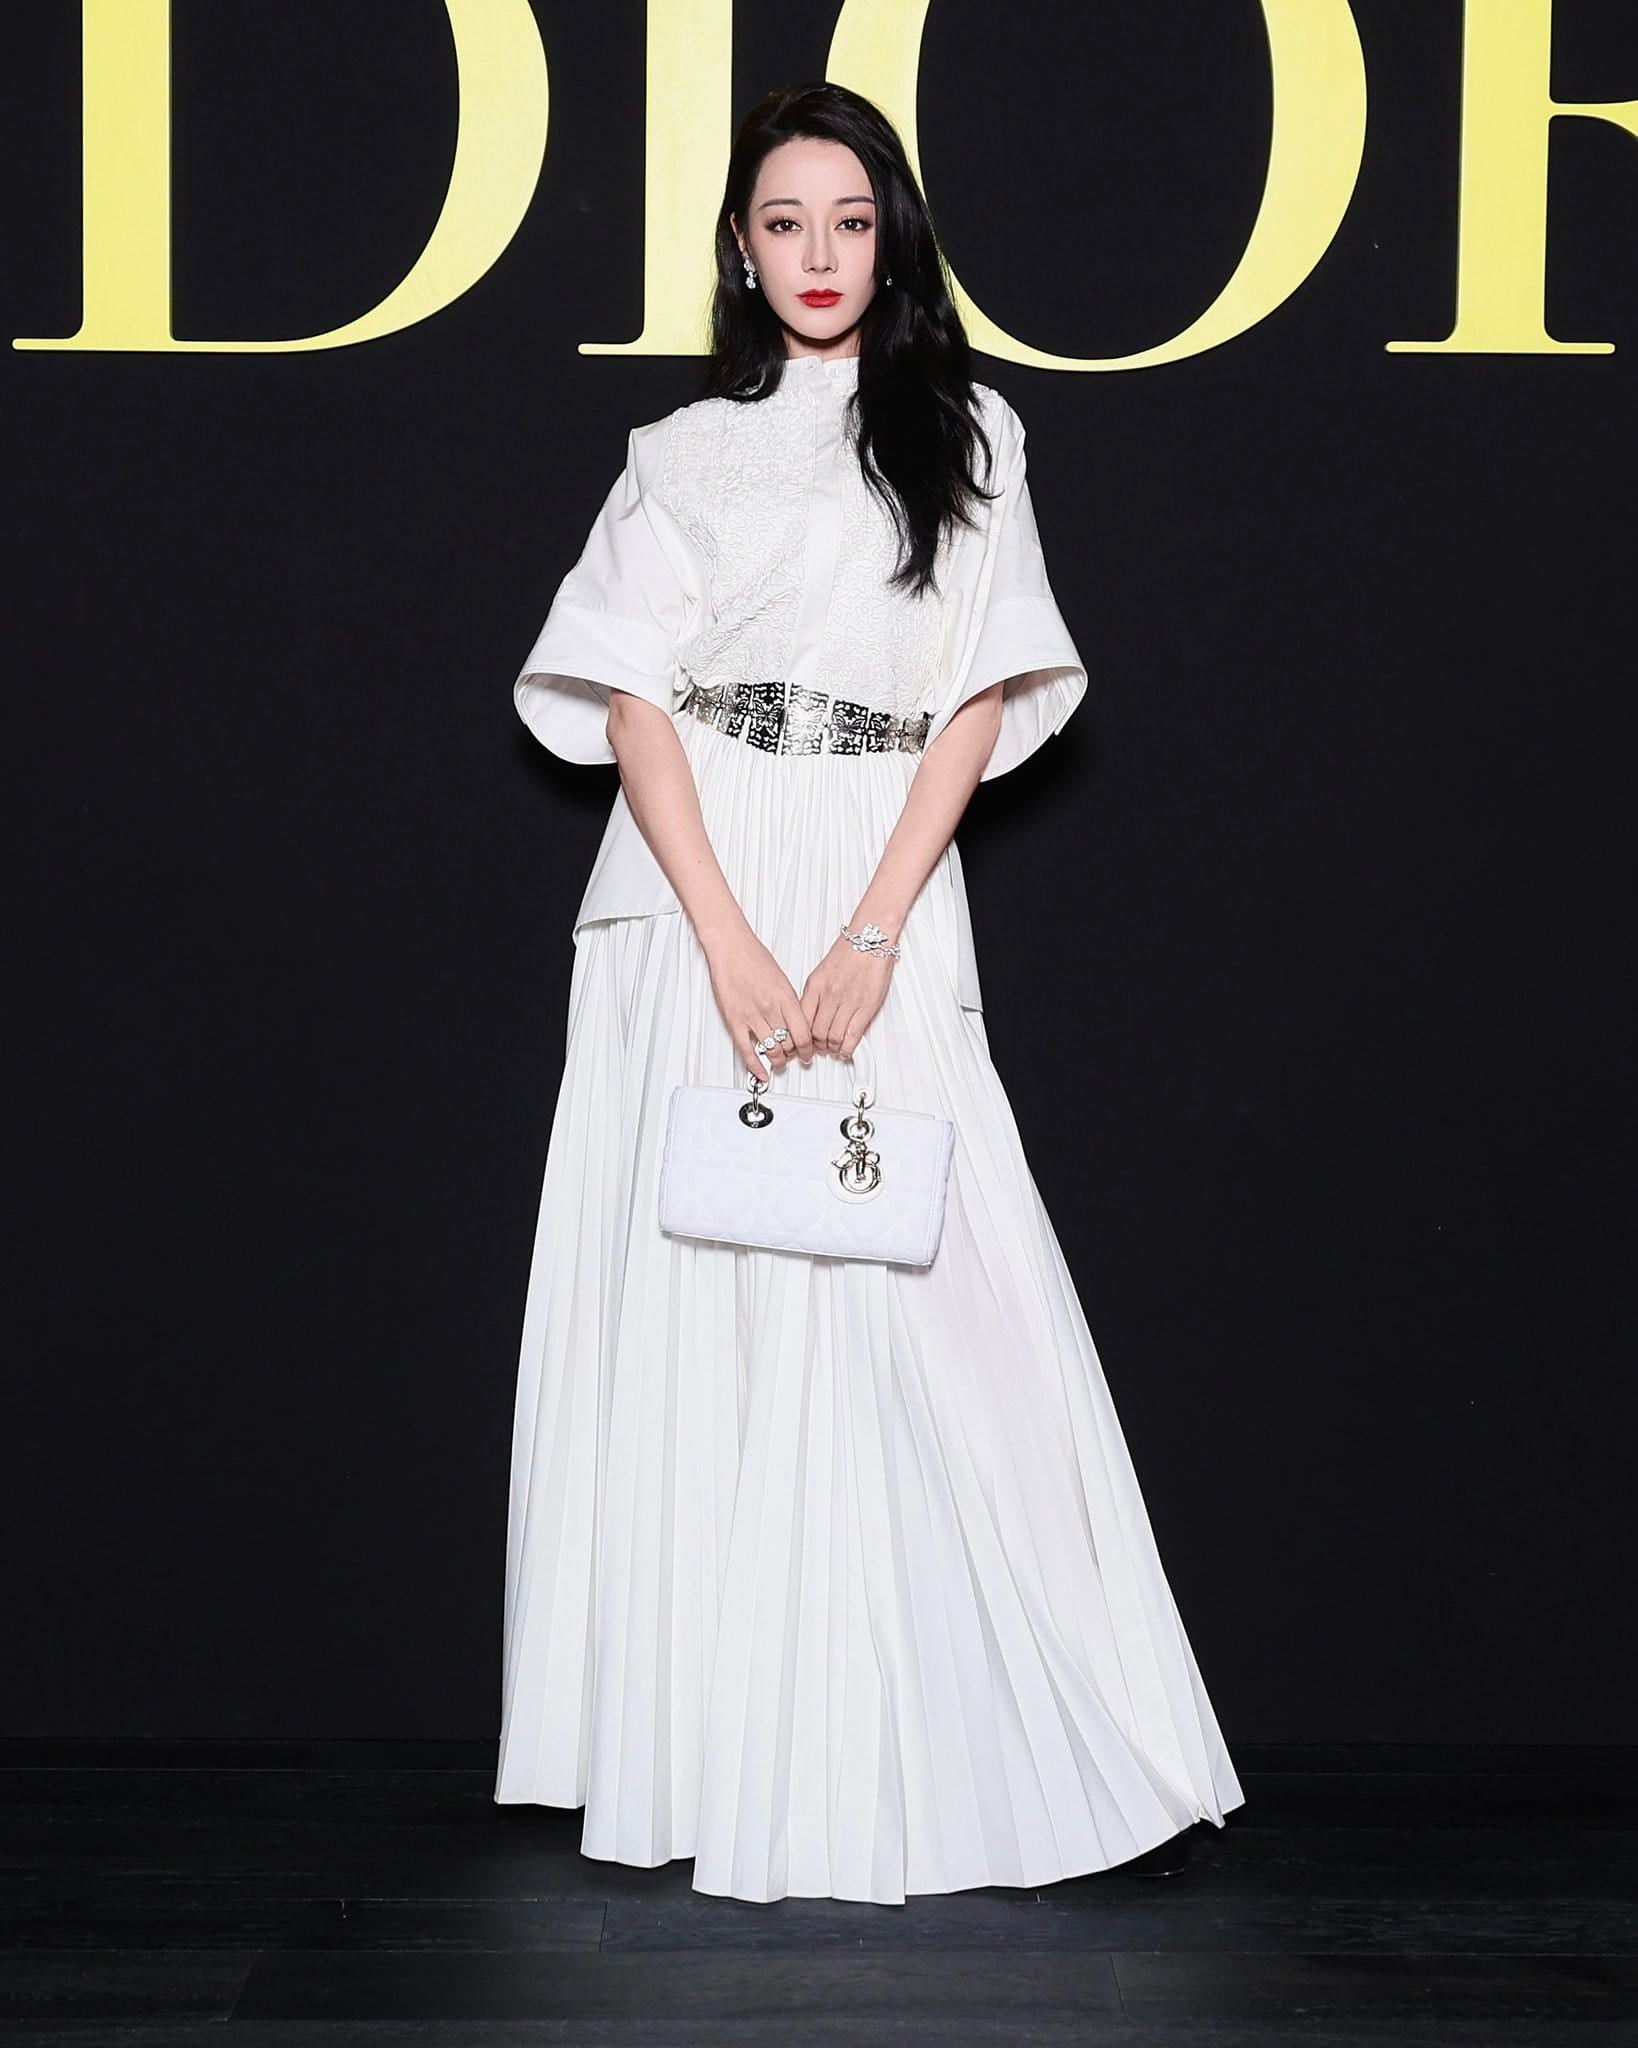 จีซู blackpink ตี๋ลี่เร่อปา ตู ต้นตะวัน งาน dior paris fashion week